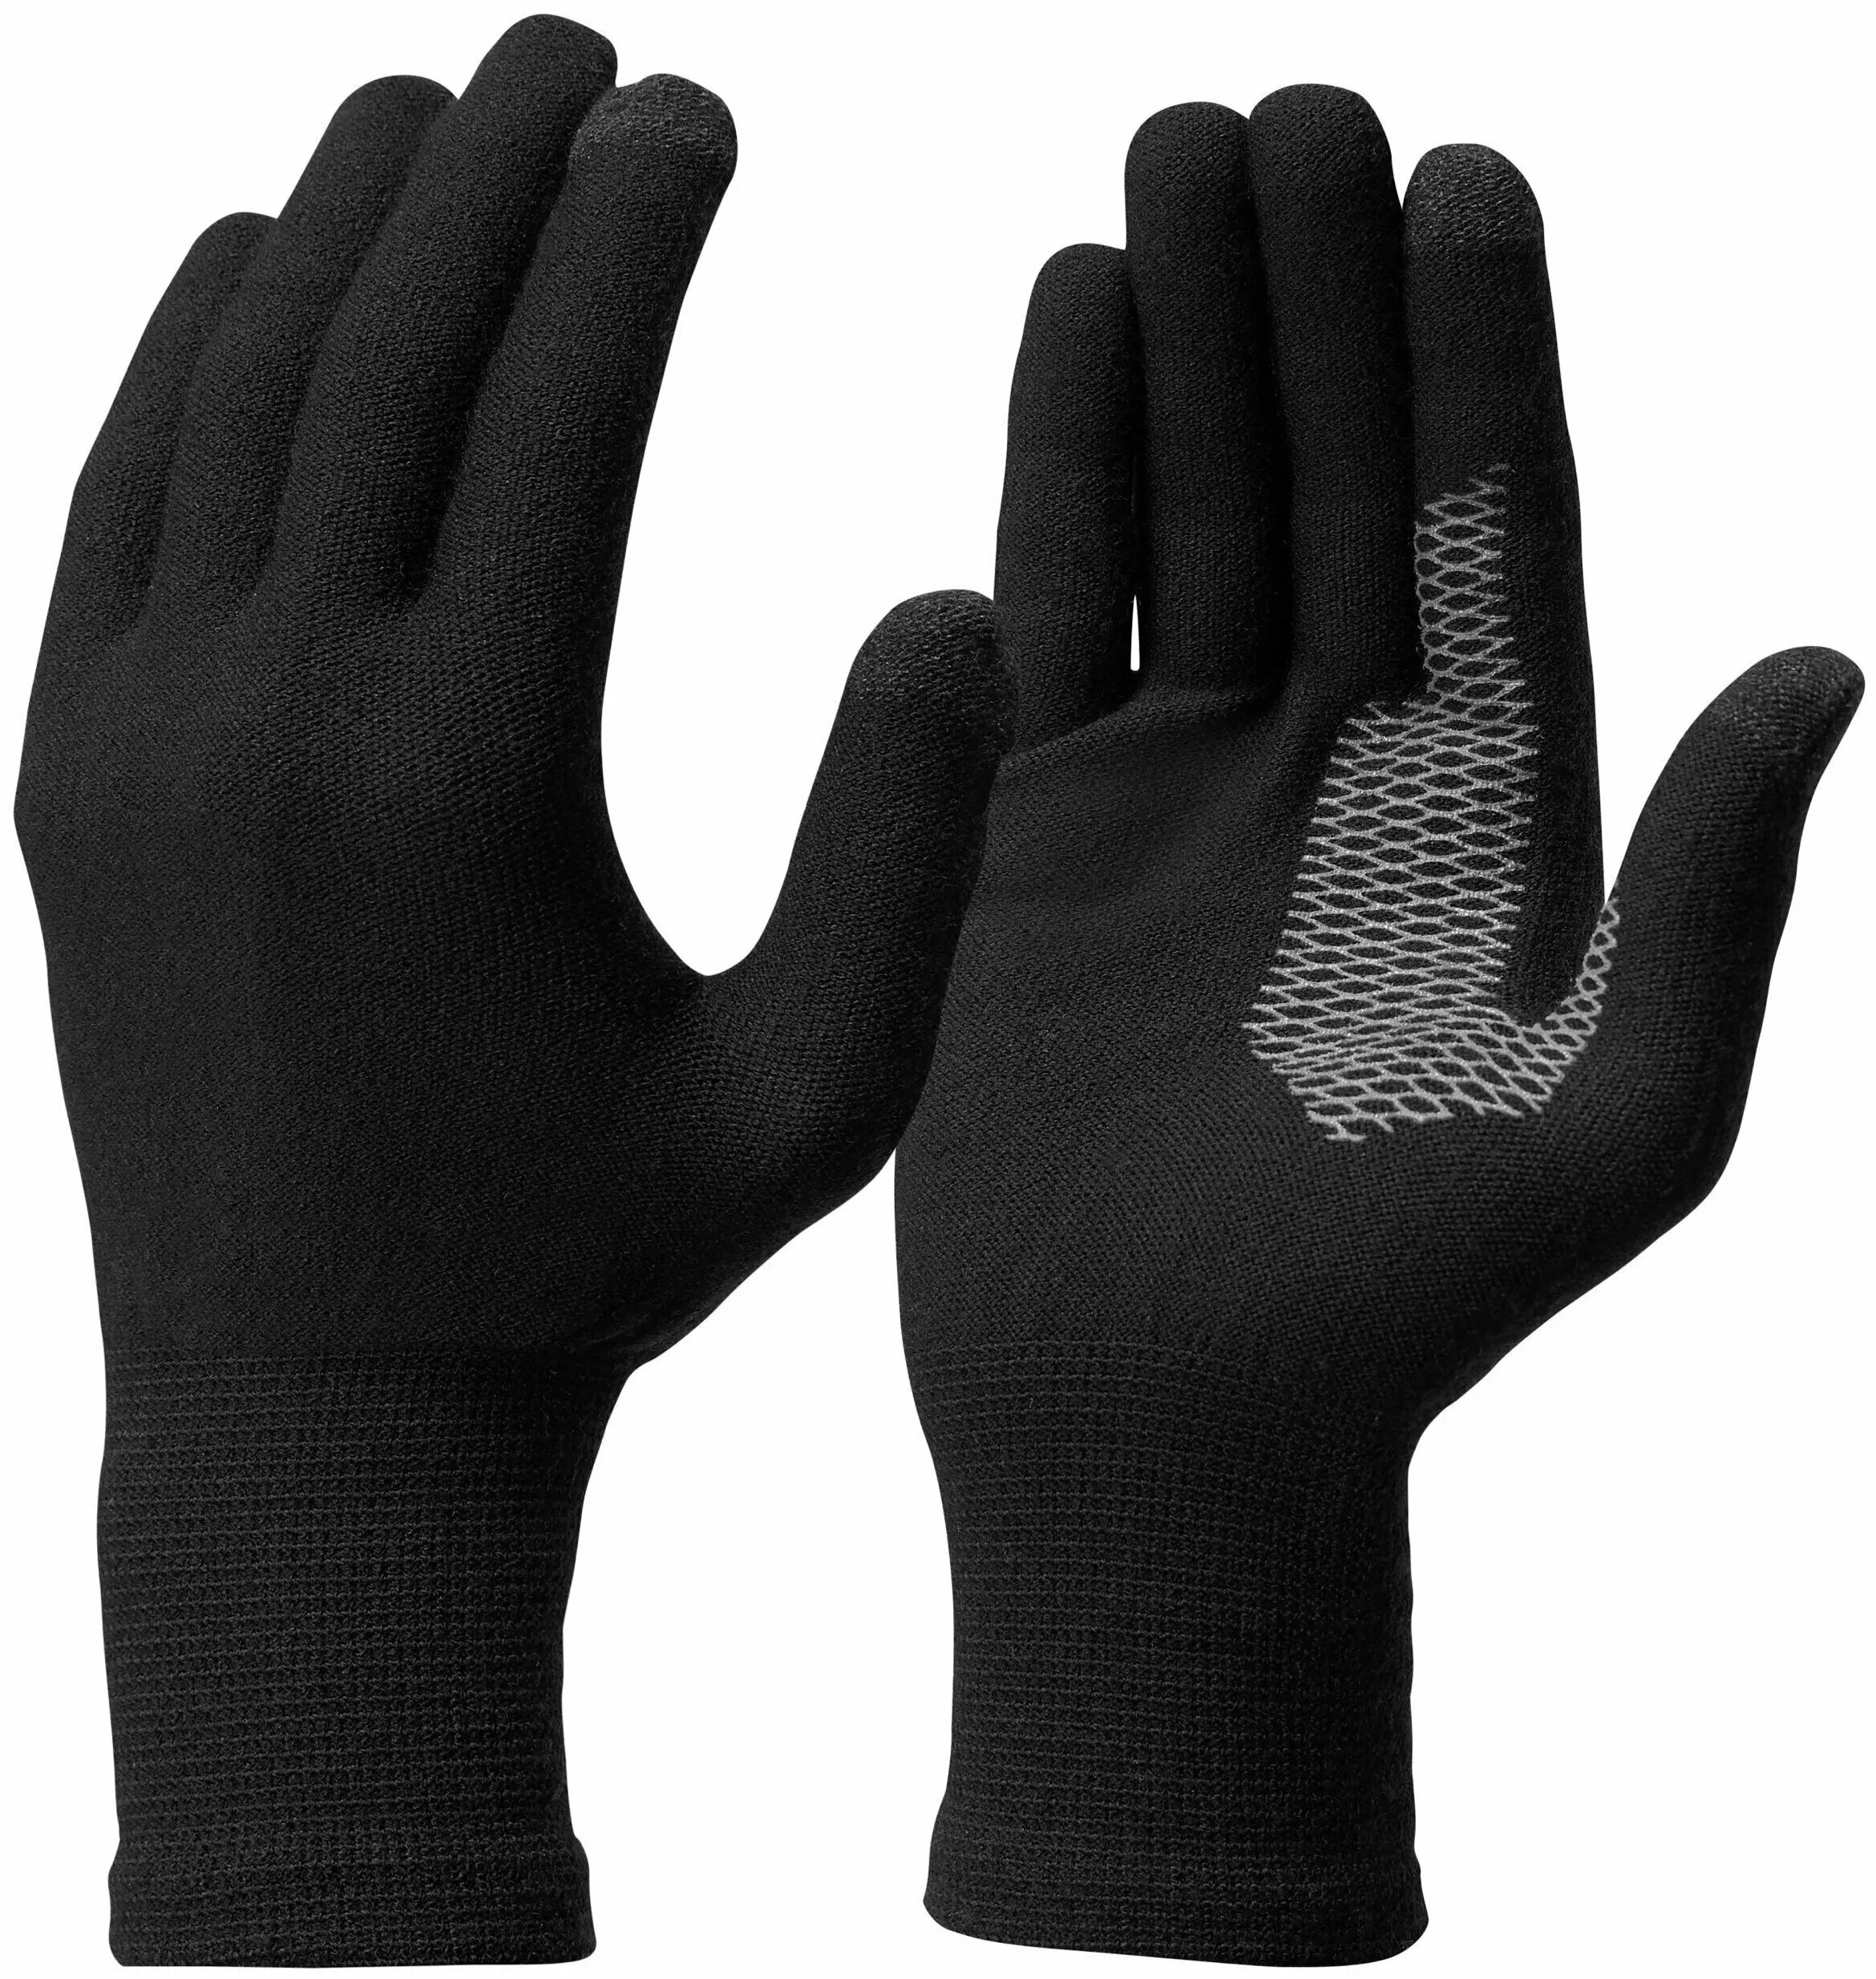 Нижние перчатки купить. Перчатки Forclaz Trek 500. Forclaz перчатки s. Перчатки мужские для Glove Trek. Перчатки Forclaz Trek 500 купить.